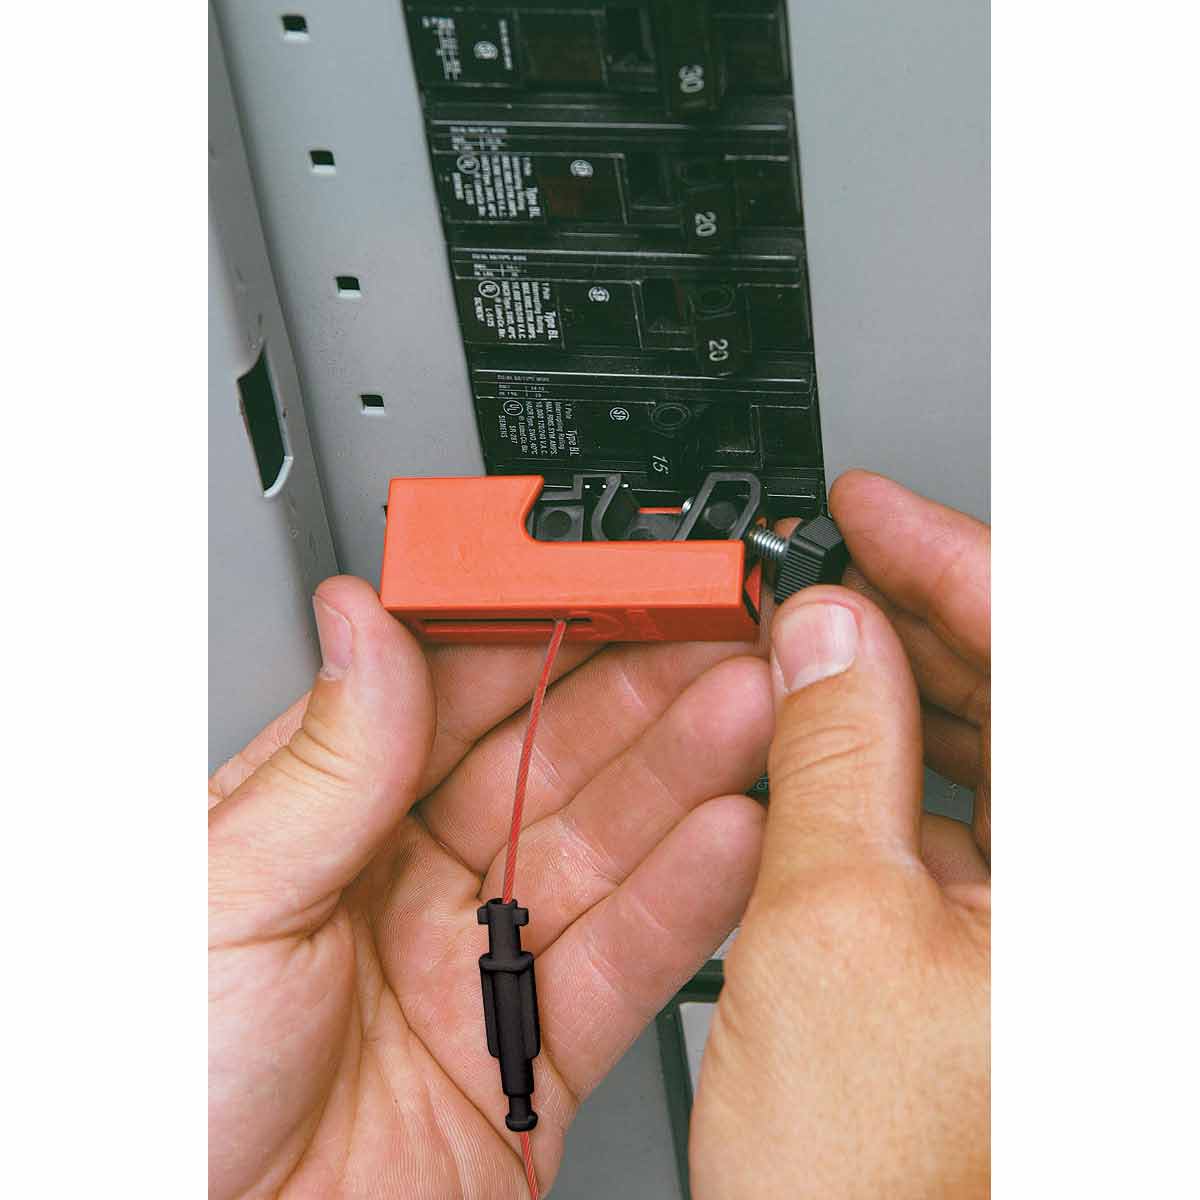 Блокираторы для выключателей EZ Panel Loc Snap-On Brady блокиратор,длина троса может использоваться совместно с дополнительным самоклеящимся держателем, 0.61 м - 2